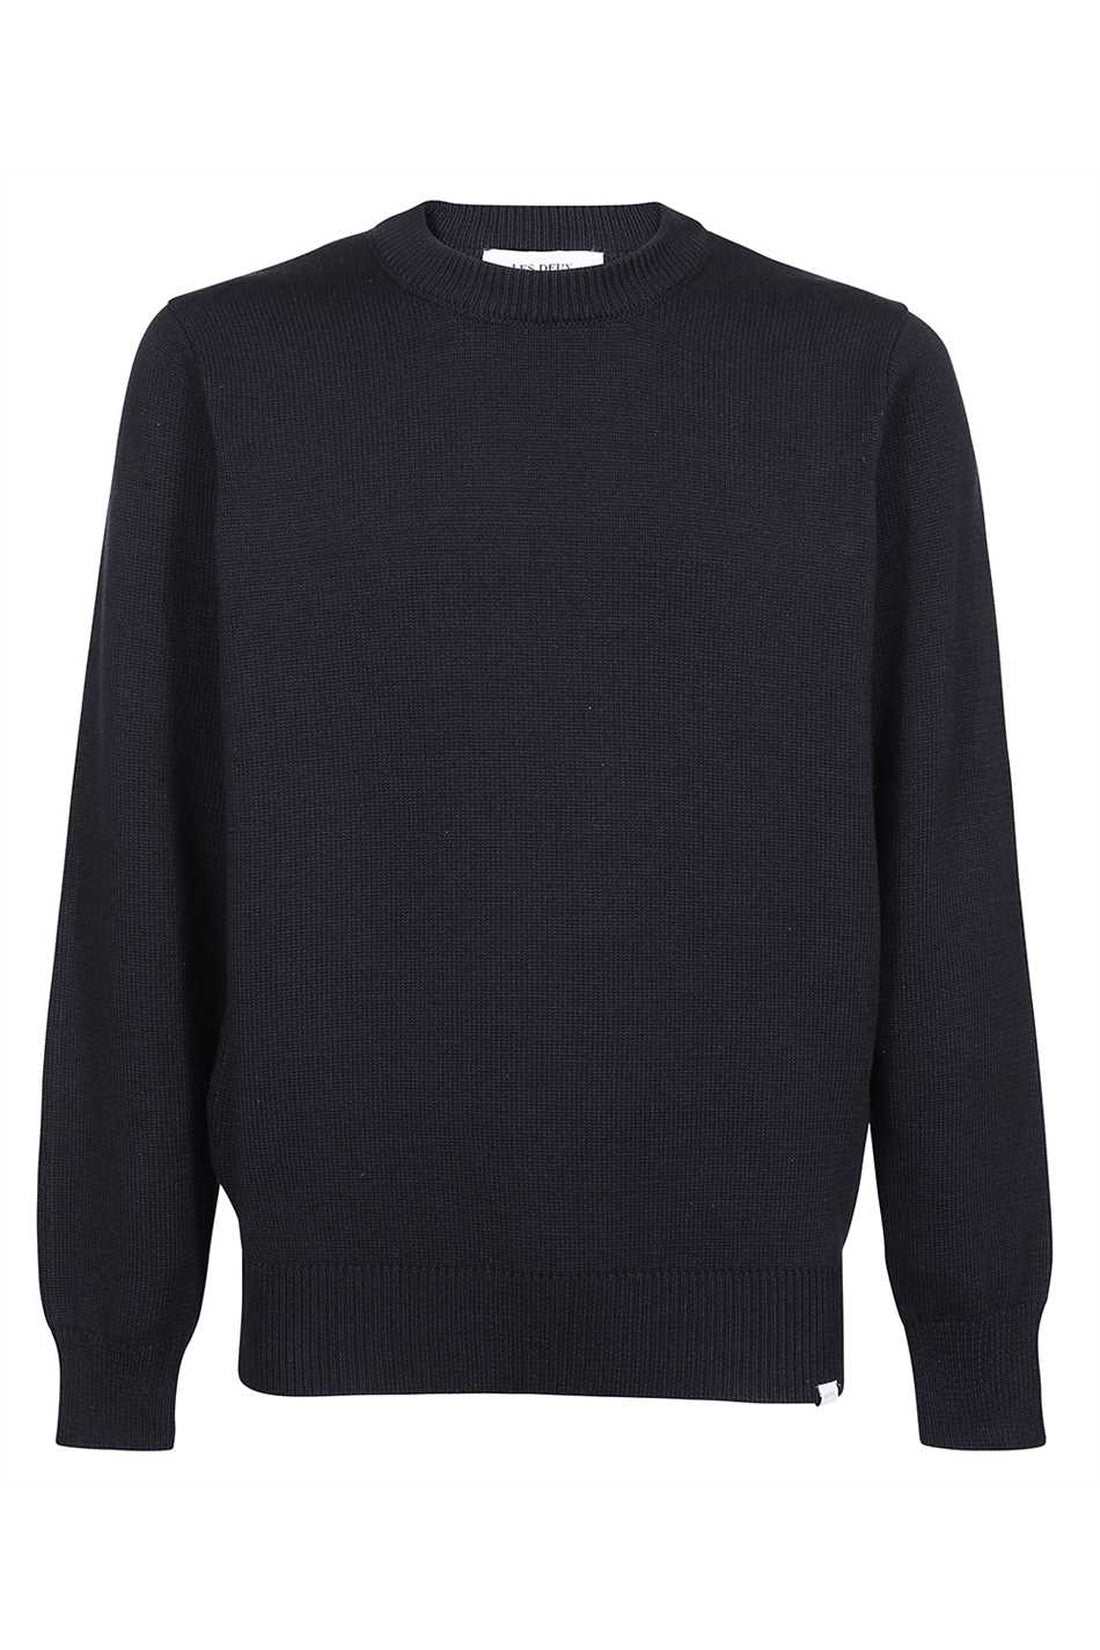 Les Deux-OUTLET-SALE-Gary long sleeve crew-neck sweater-ARCHIVIST